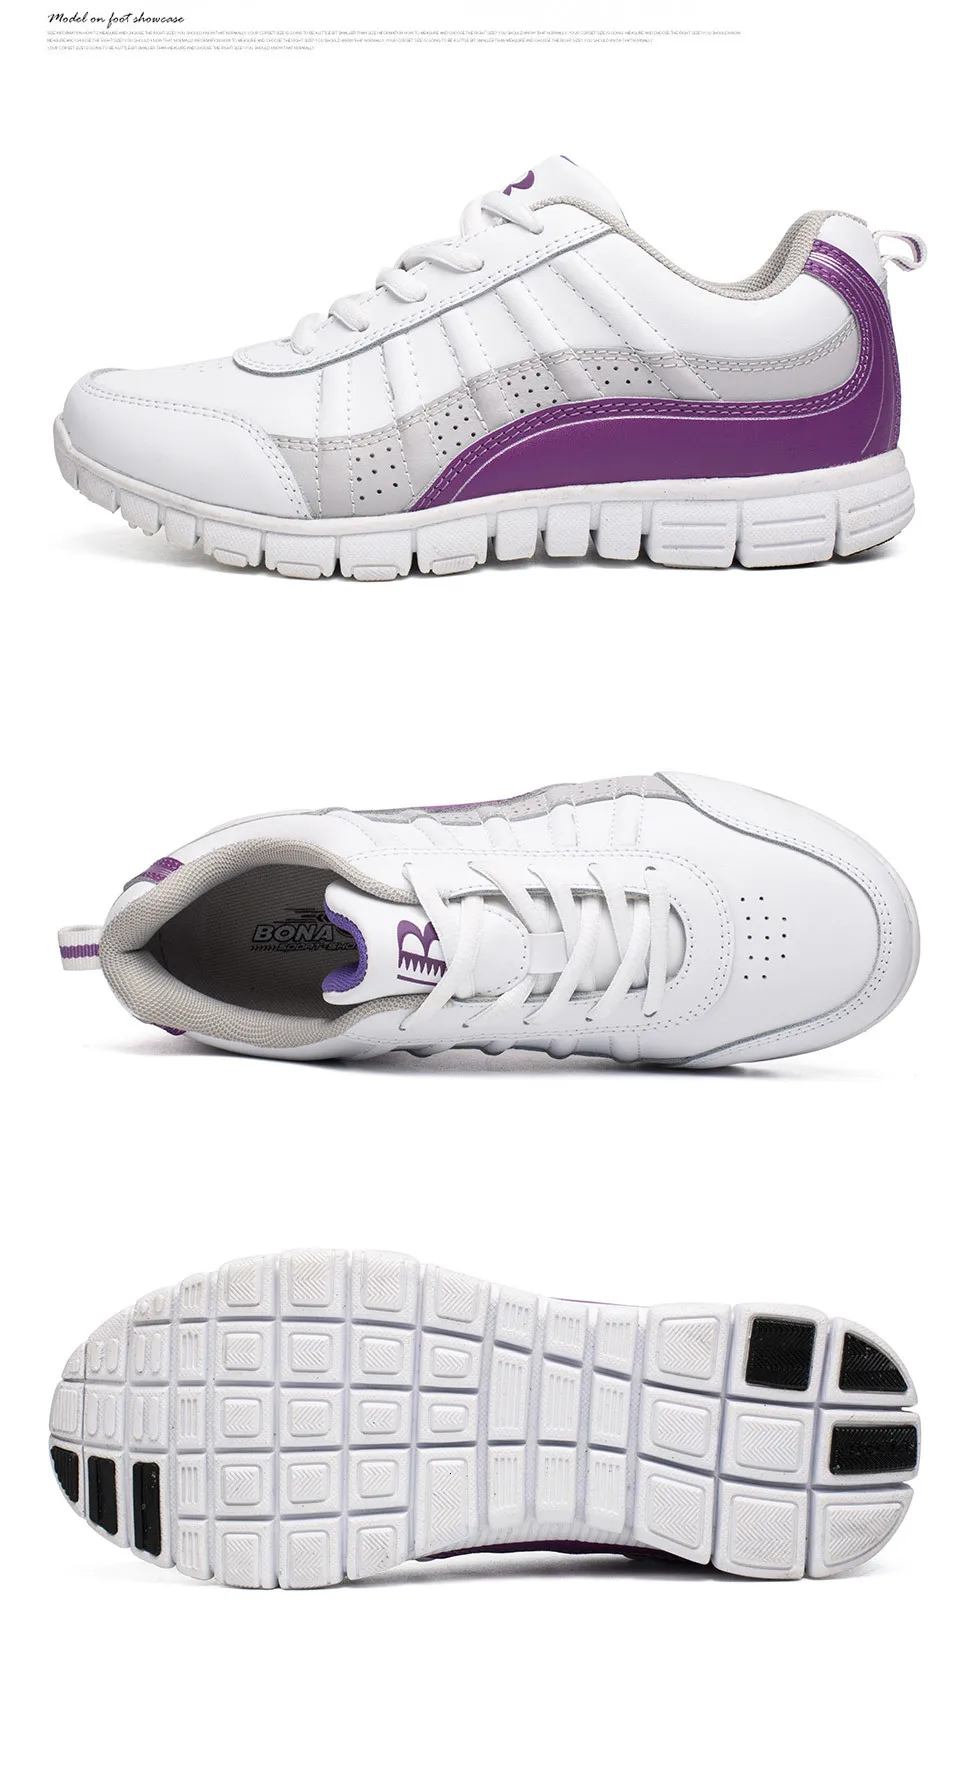 BONA/Новинка; стильные женские кроссовки для бега; женские кроссовки на шнуровке; спортивная обувь; прогулочная обувь для бега; удобные